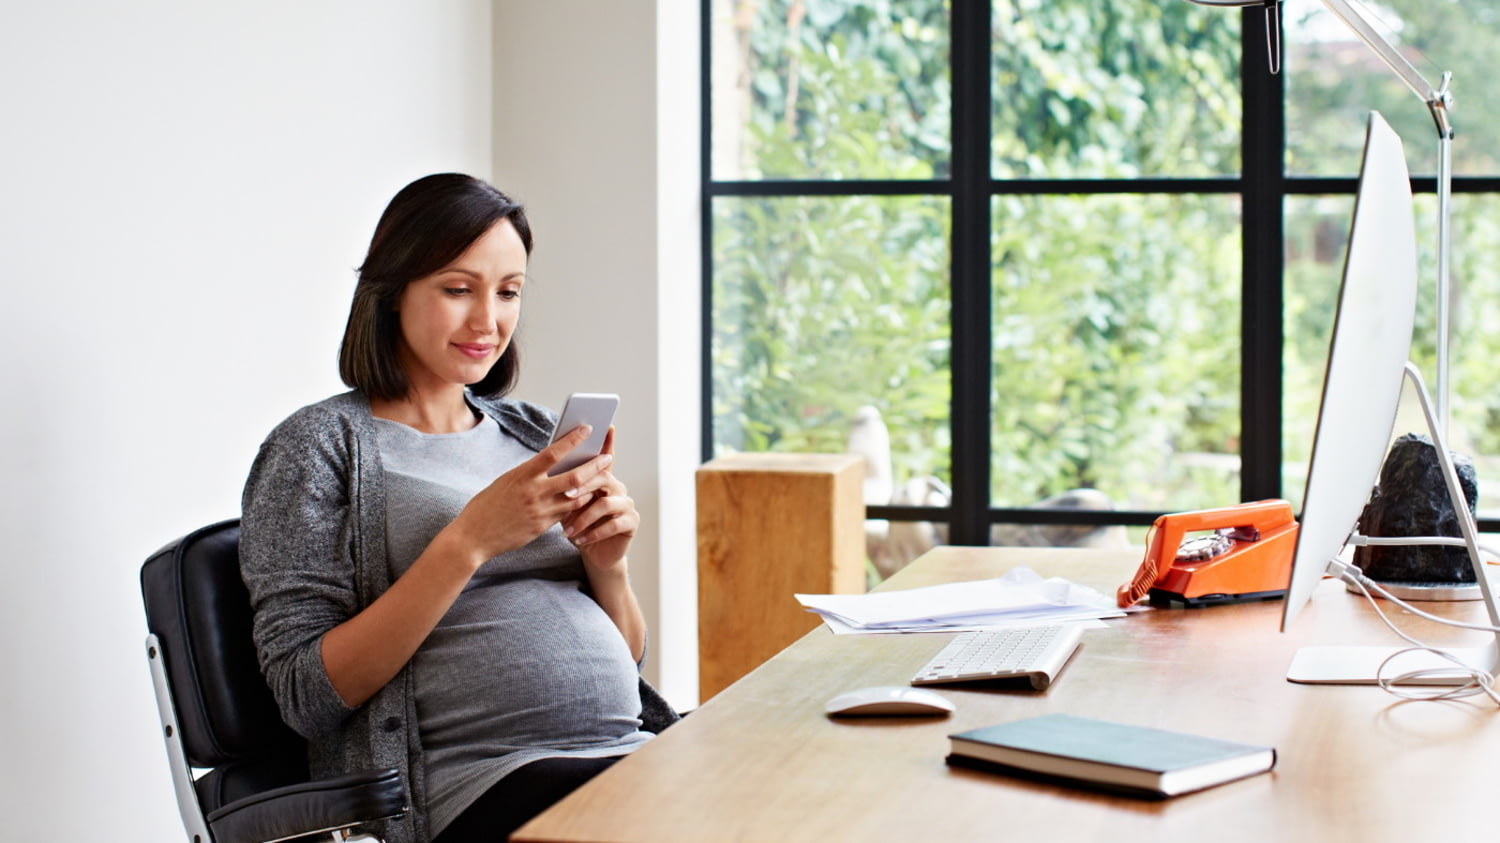 Eine junge schwangere Frau sitzt am Schreibtisch und schaut auf ihr Smartphone